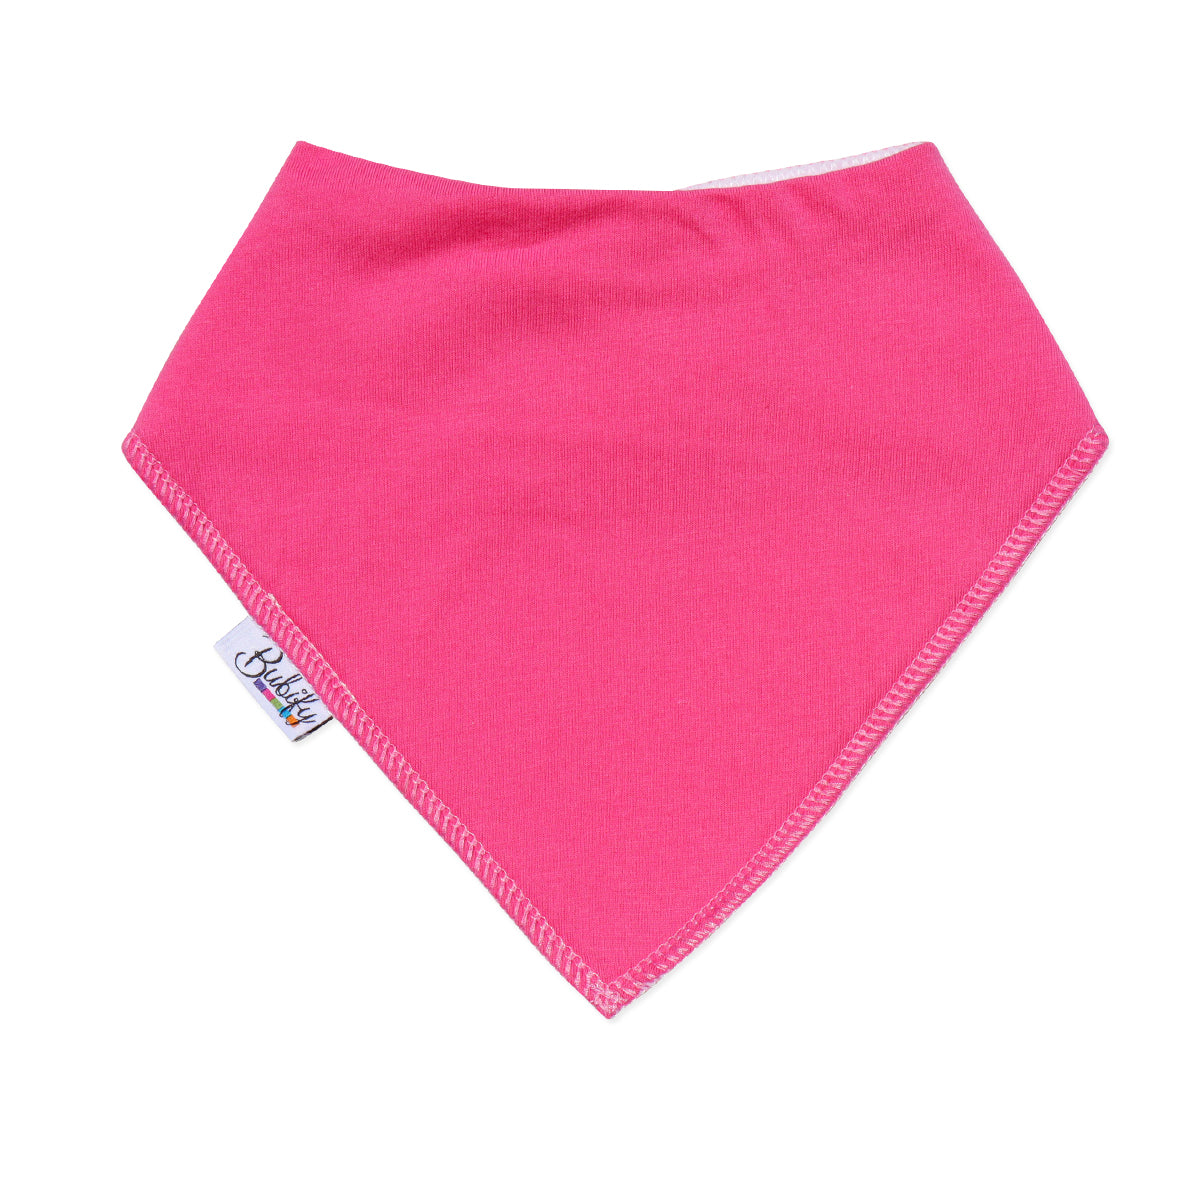 Bandana Bibs 4 Pack - Shades of Pink